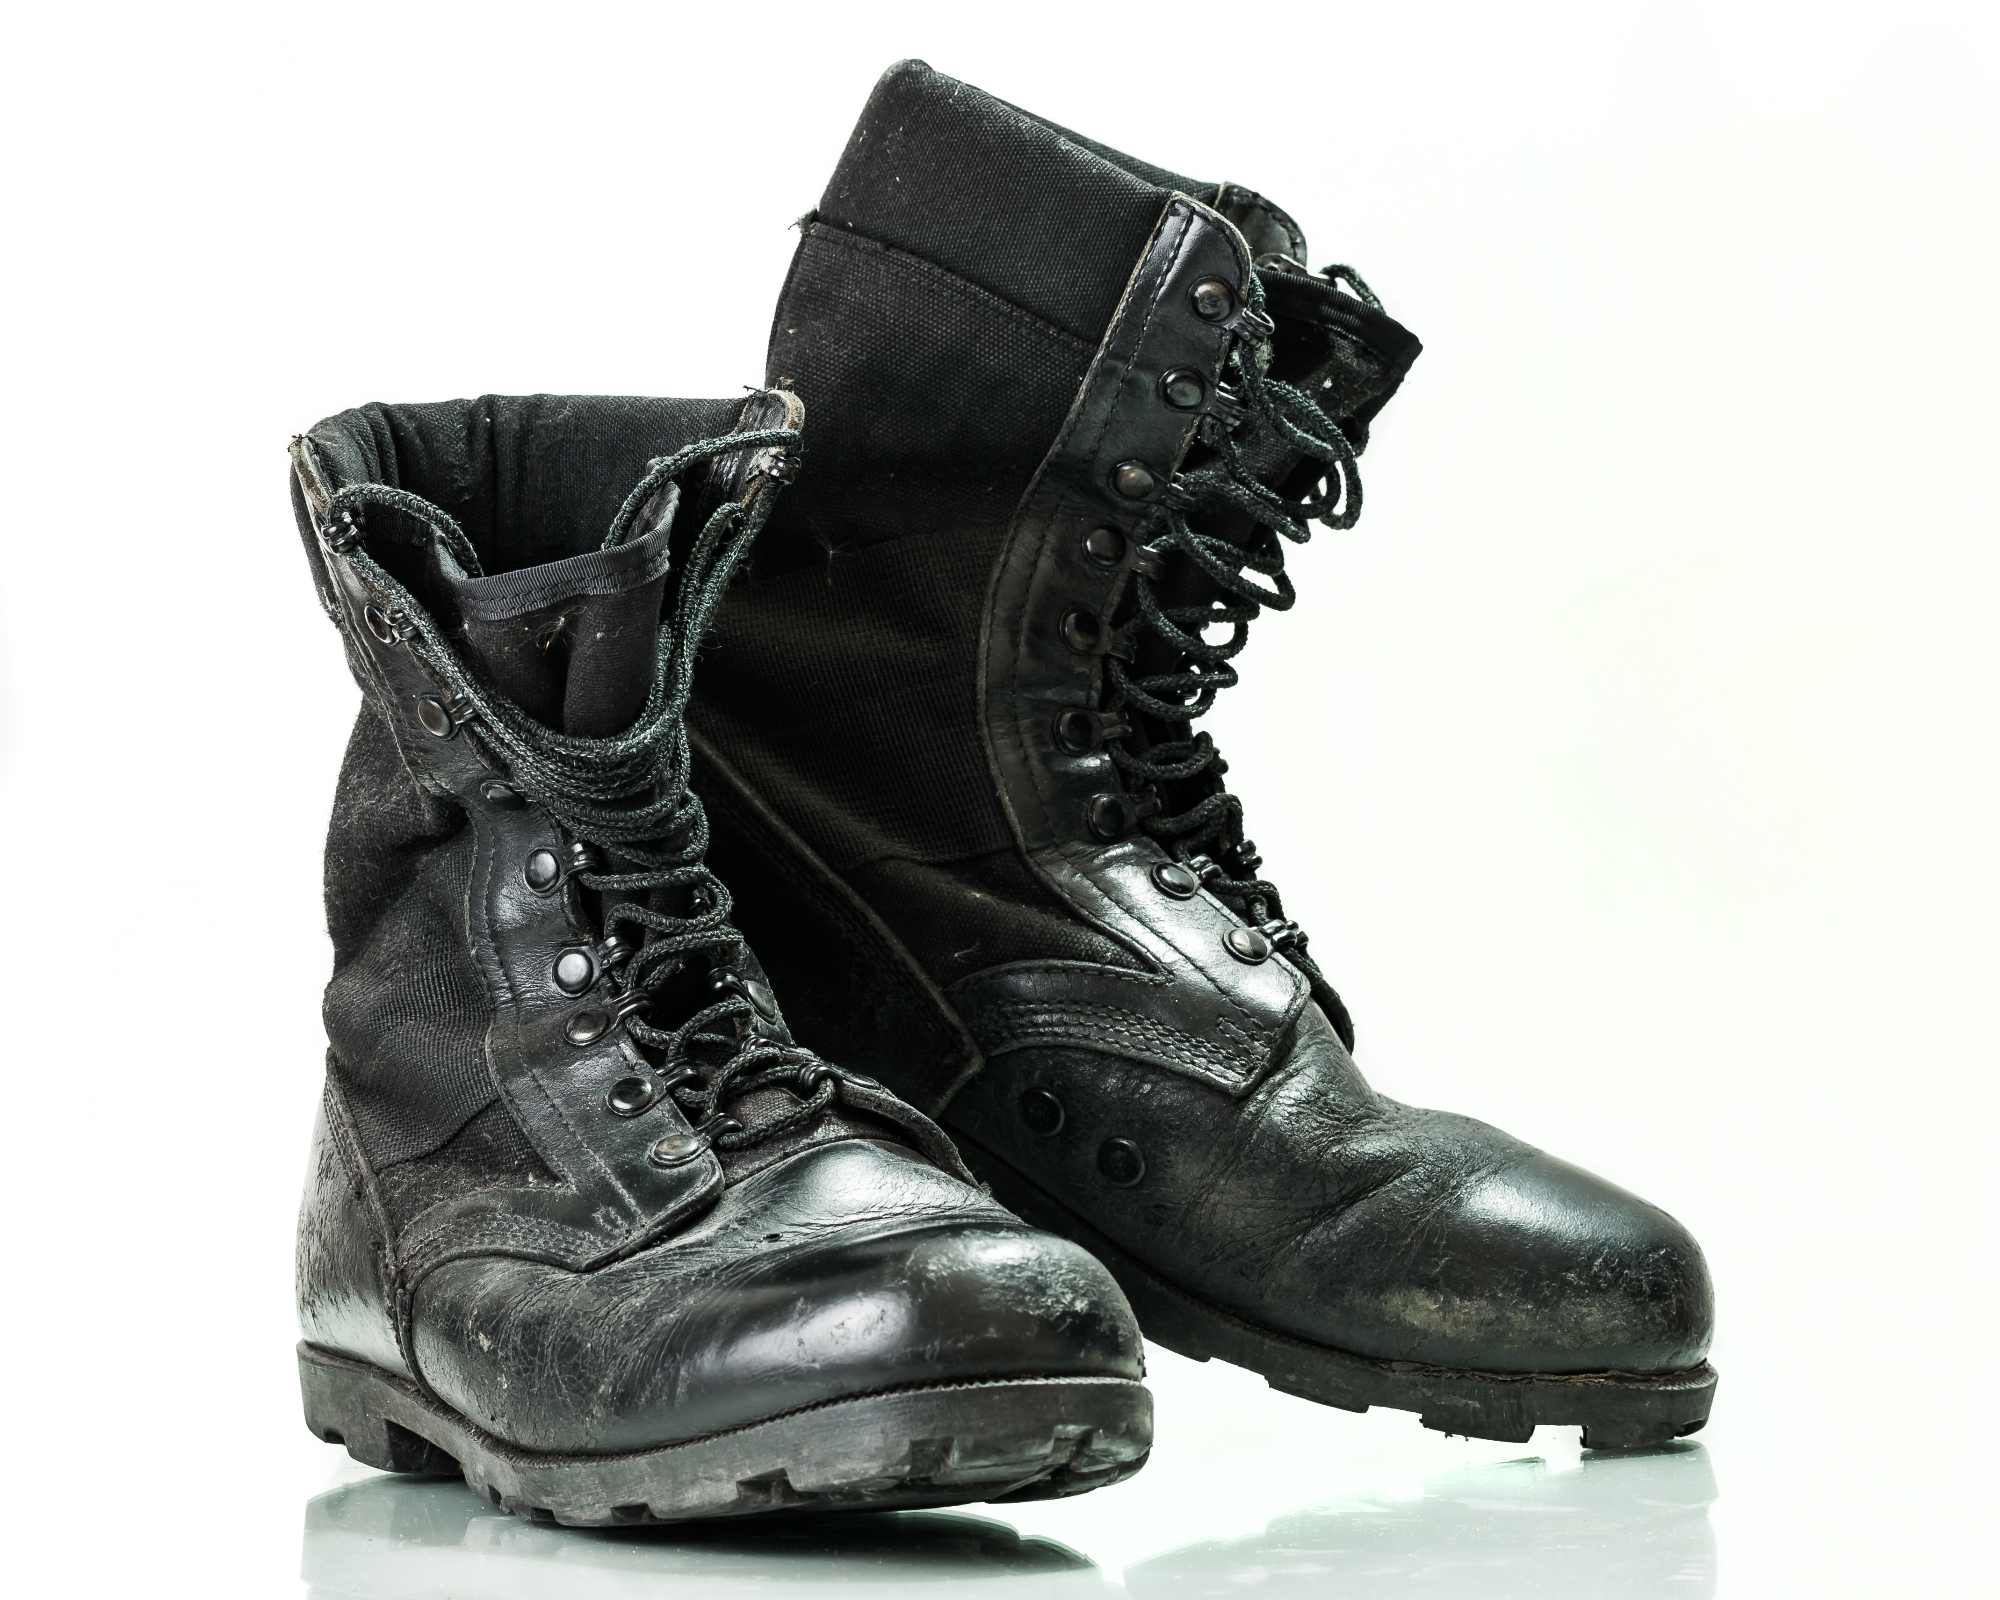 Alternativna zaščitna zaščitna obutev so lahko tudi gumijasti škornji